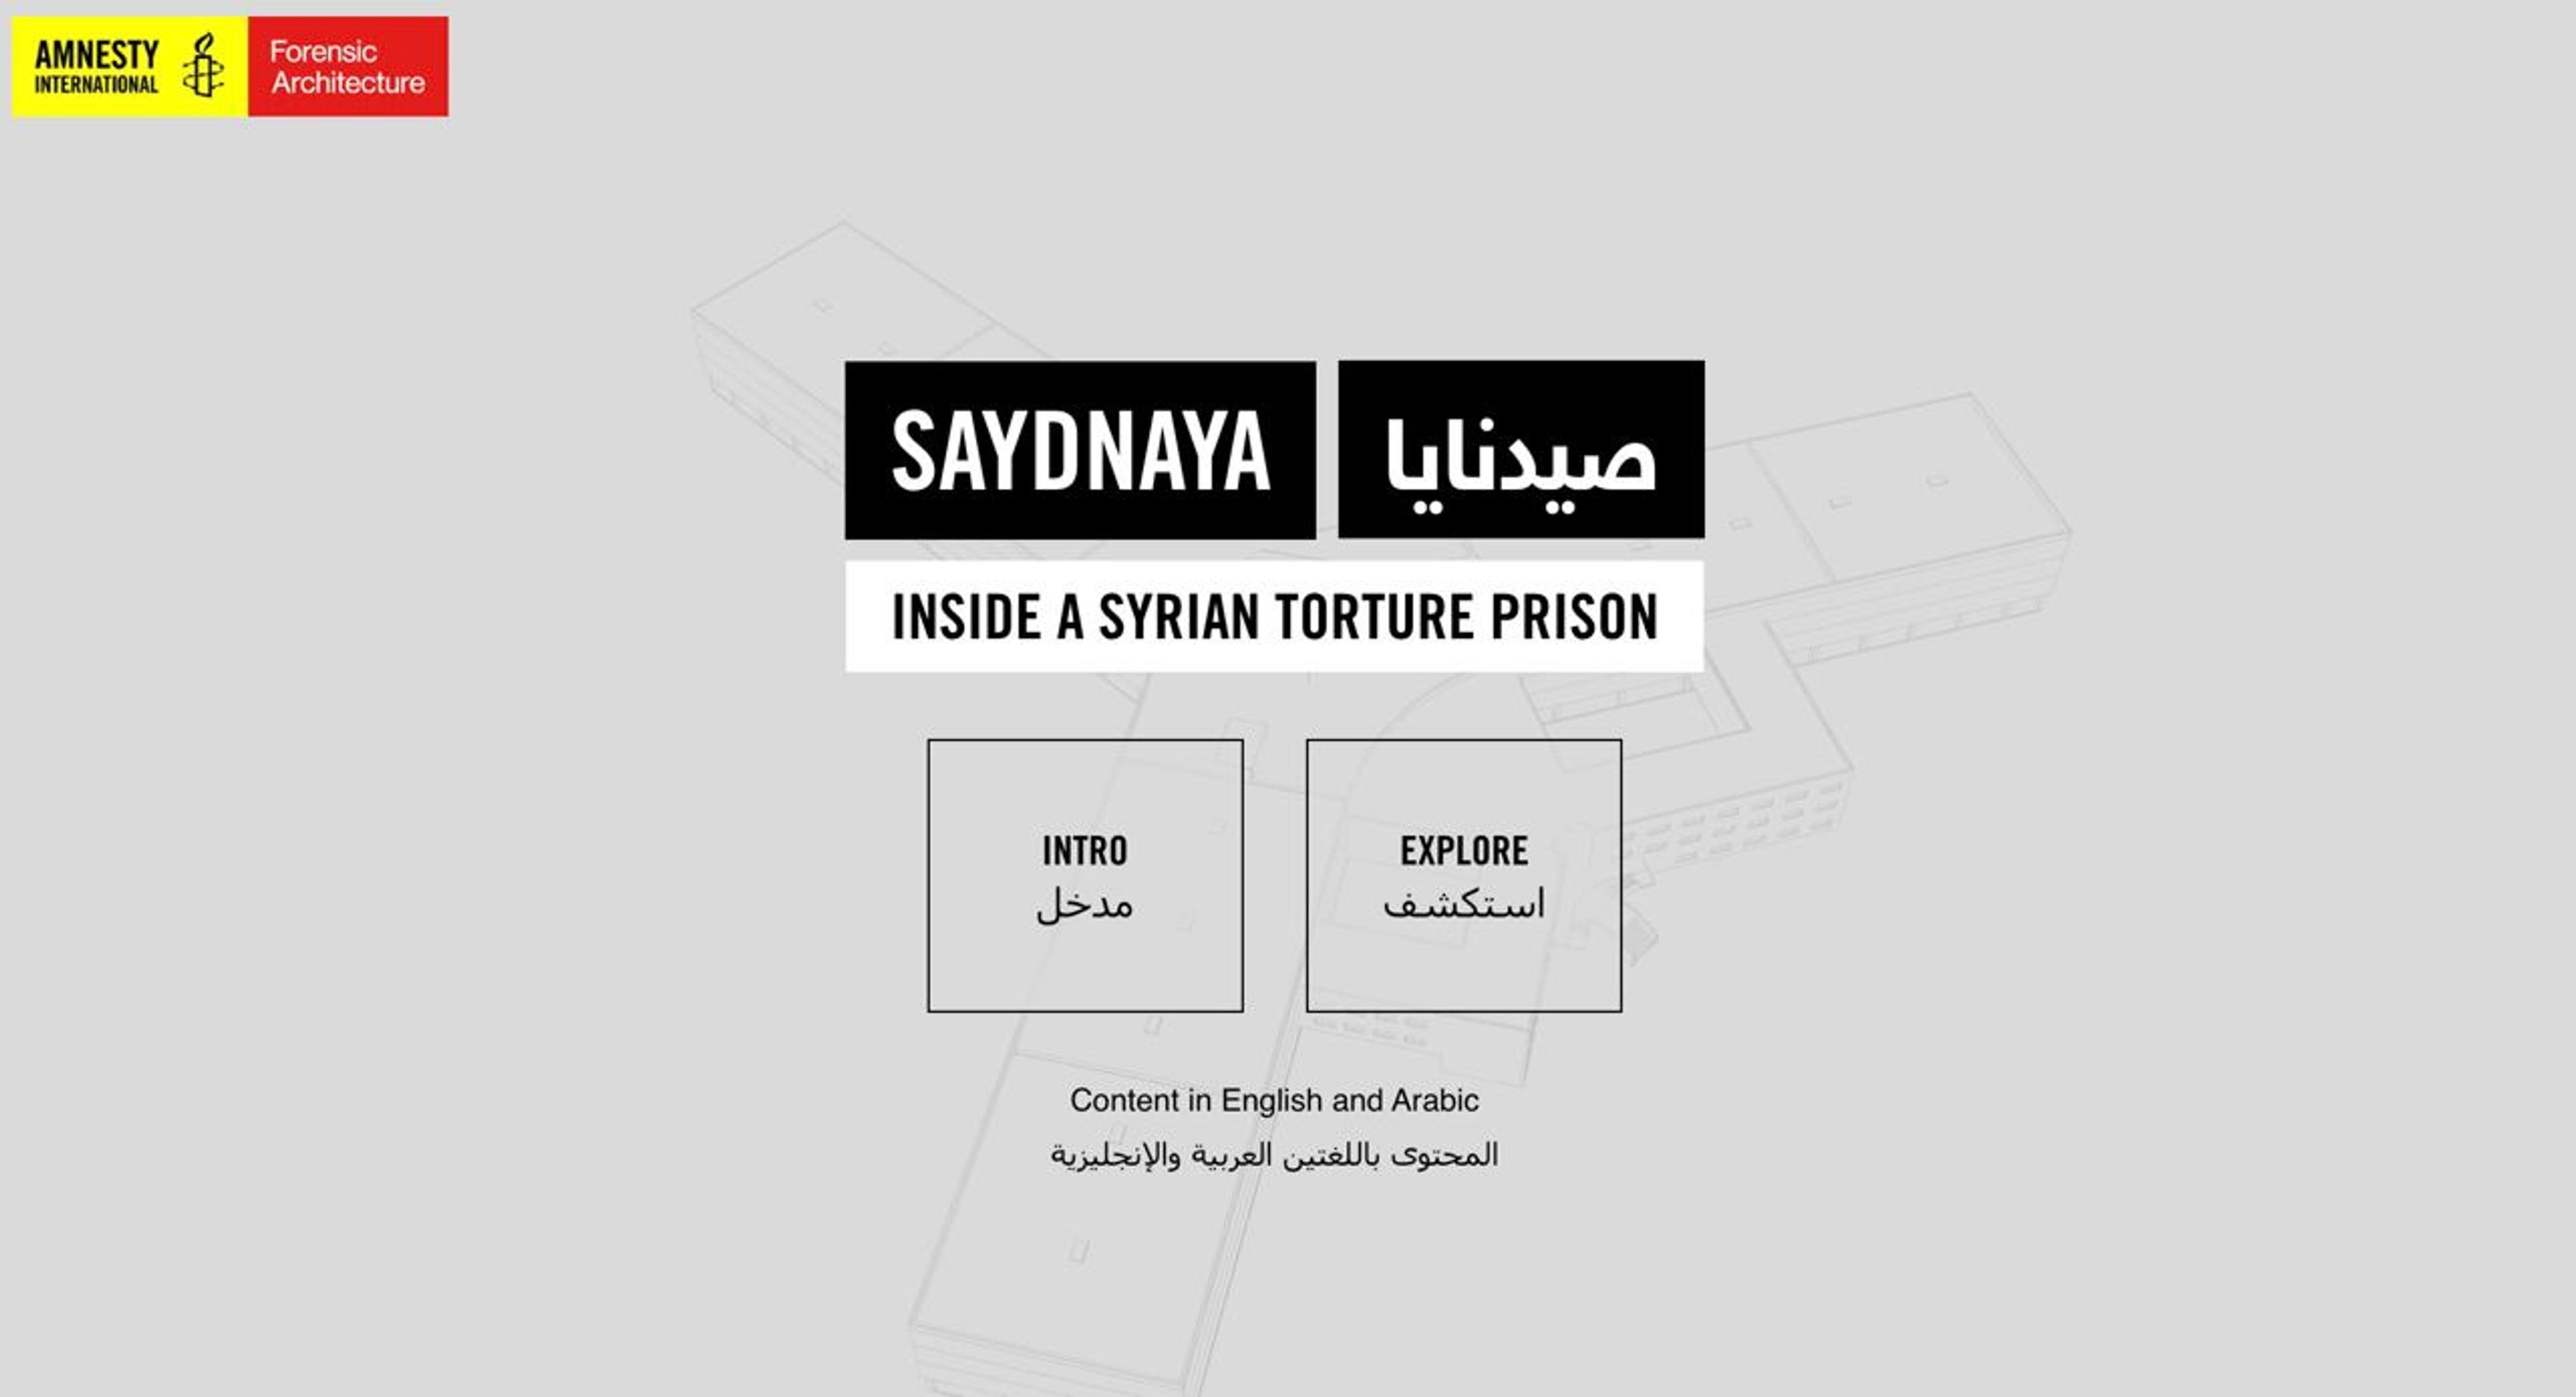 Amnesty International : Explorez Sadnaya